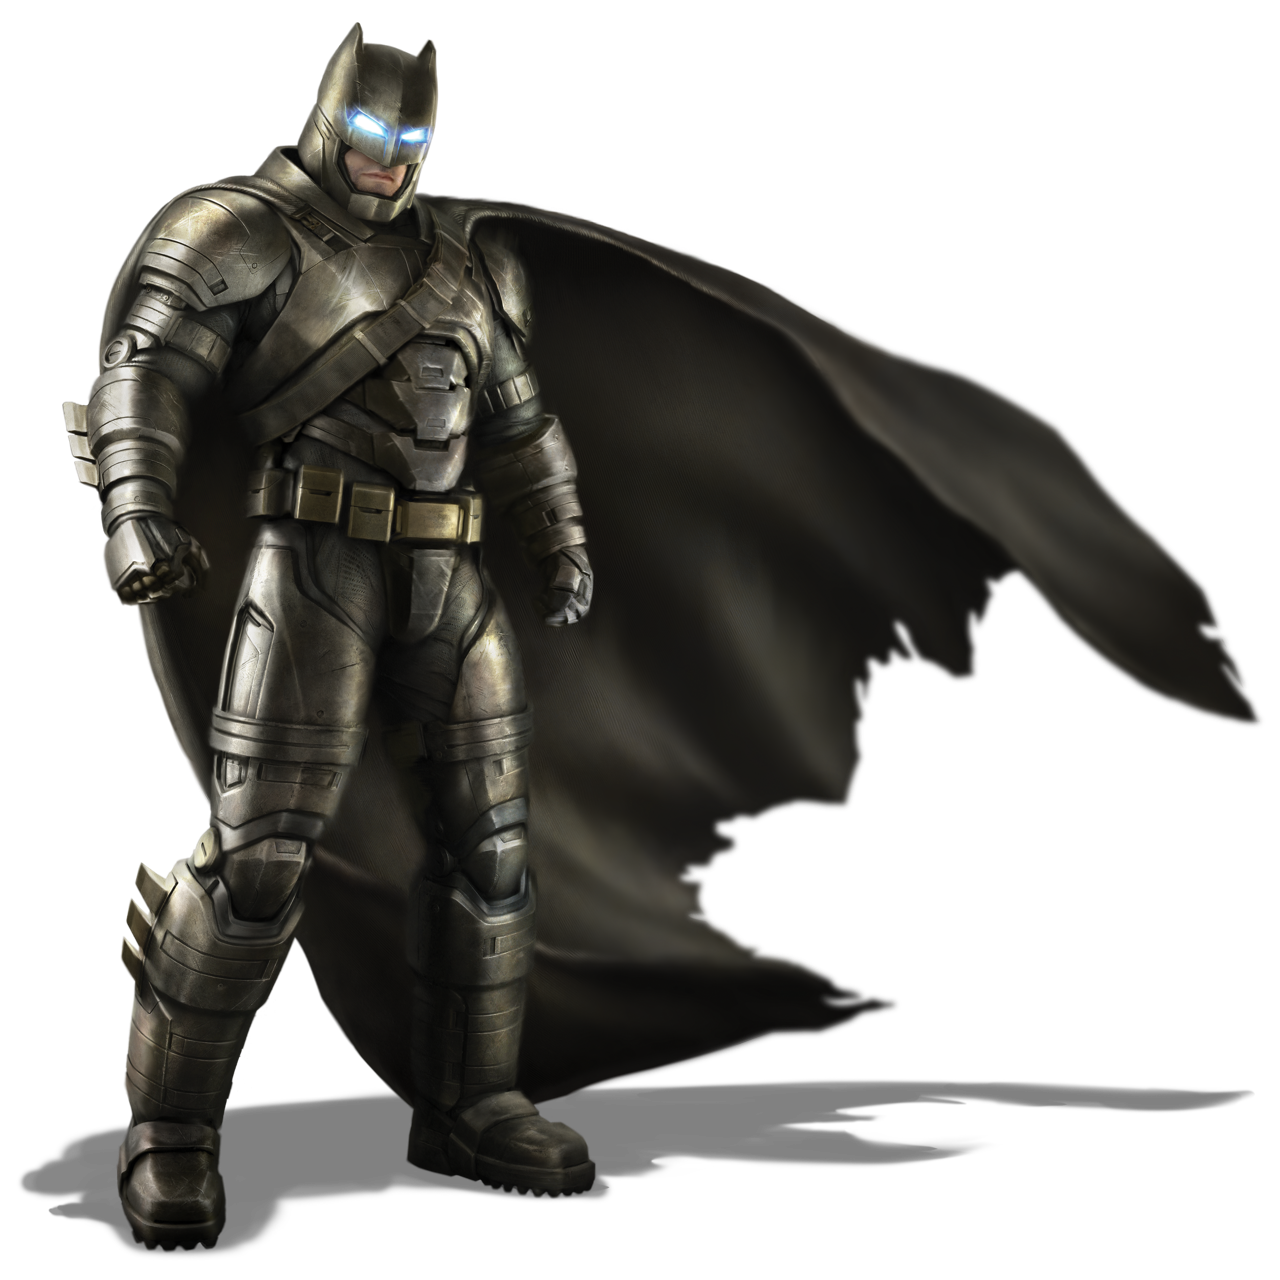 Download Batman Vs Superman HQ PNG Image | FreePNGImg